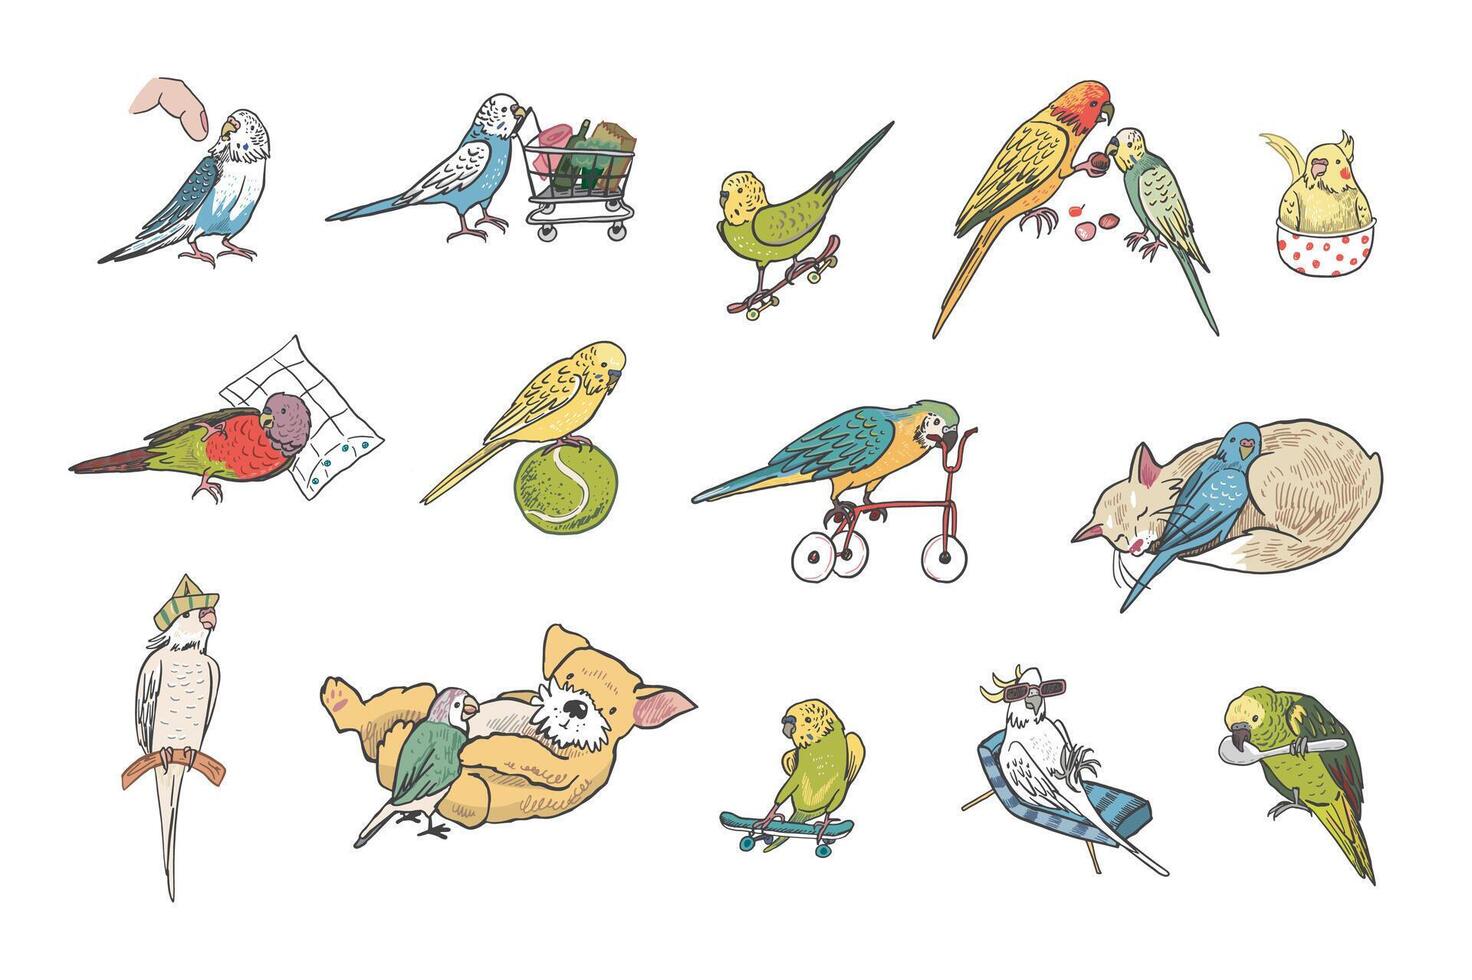 Parrots birds pets vector illustrations set.